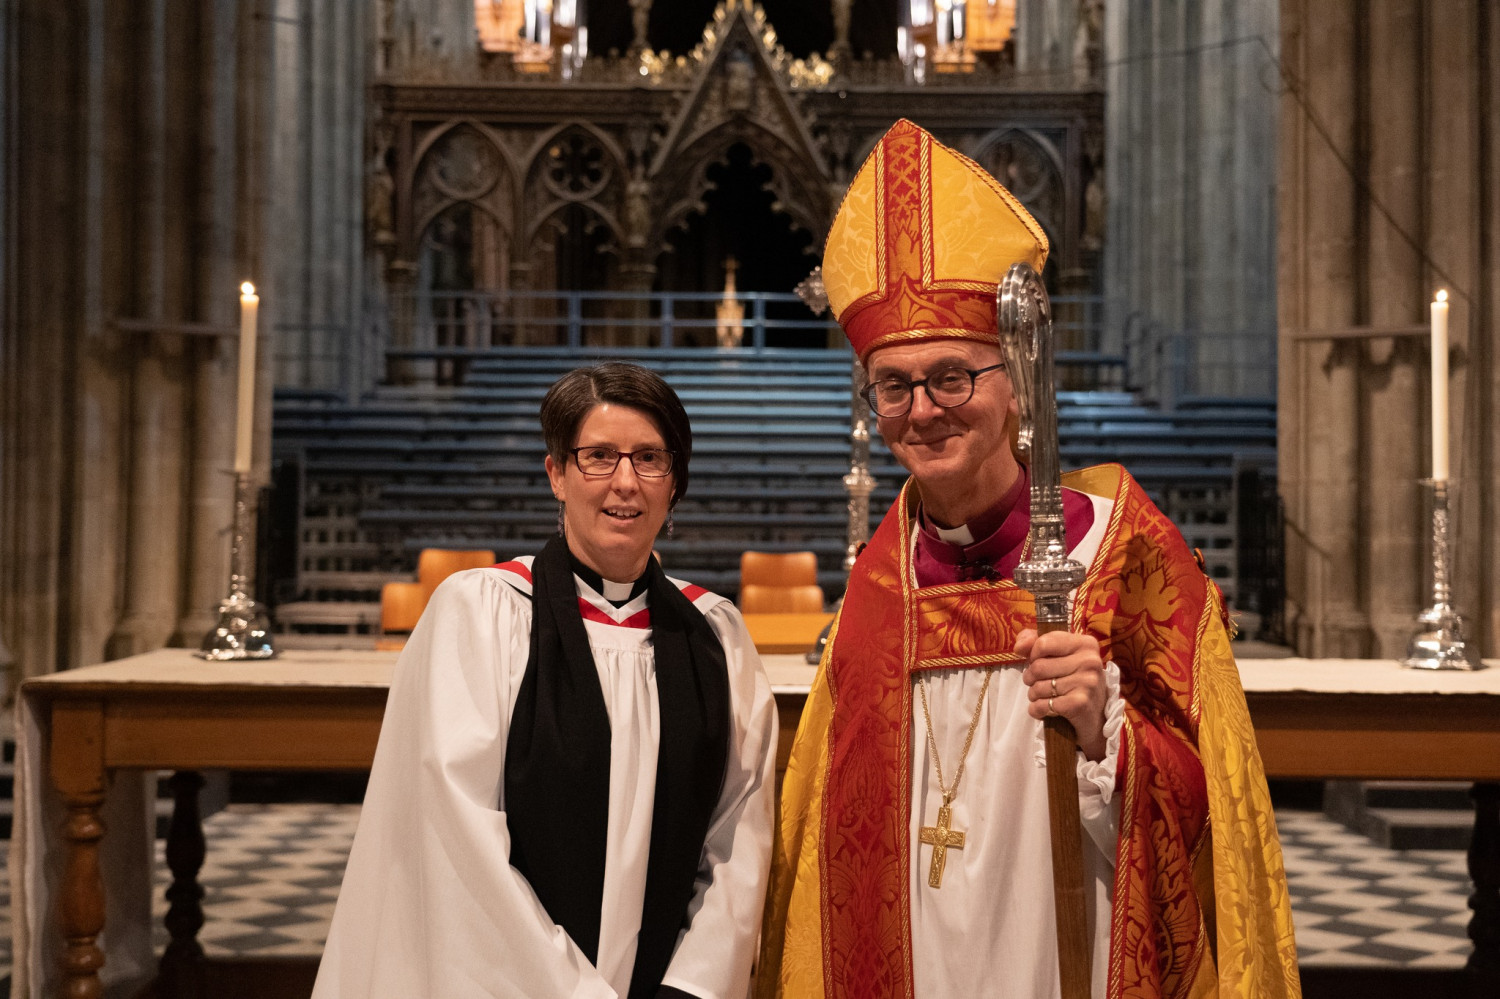 Diane Cooksey with Bishop John